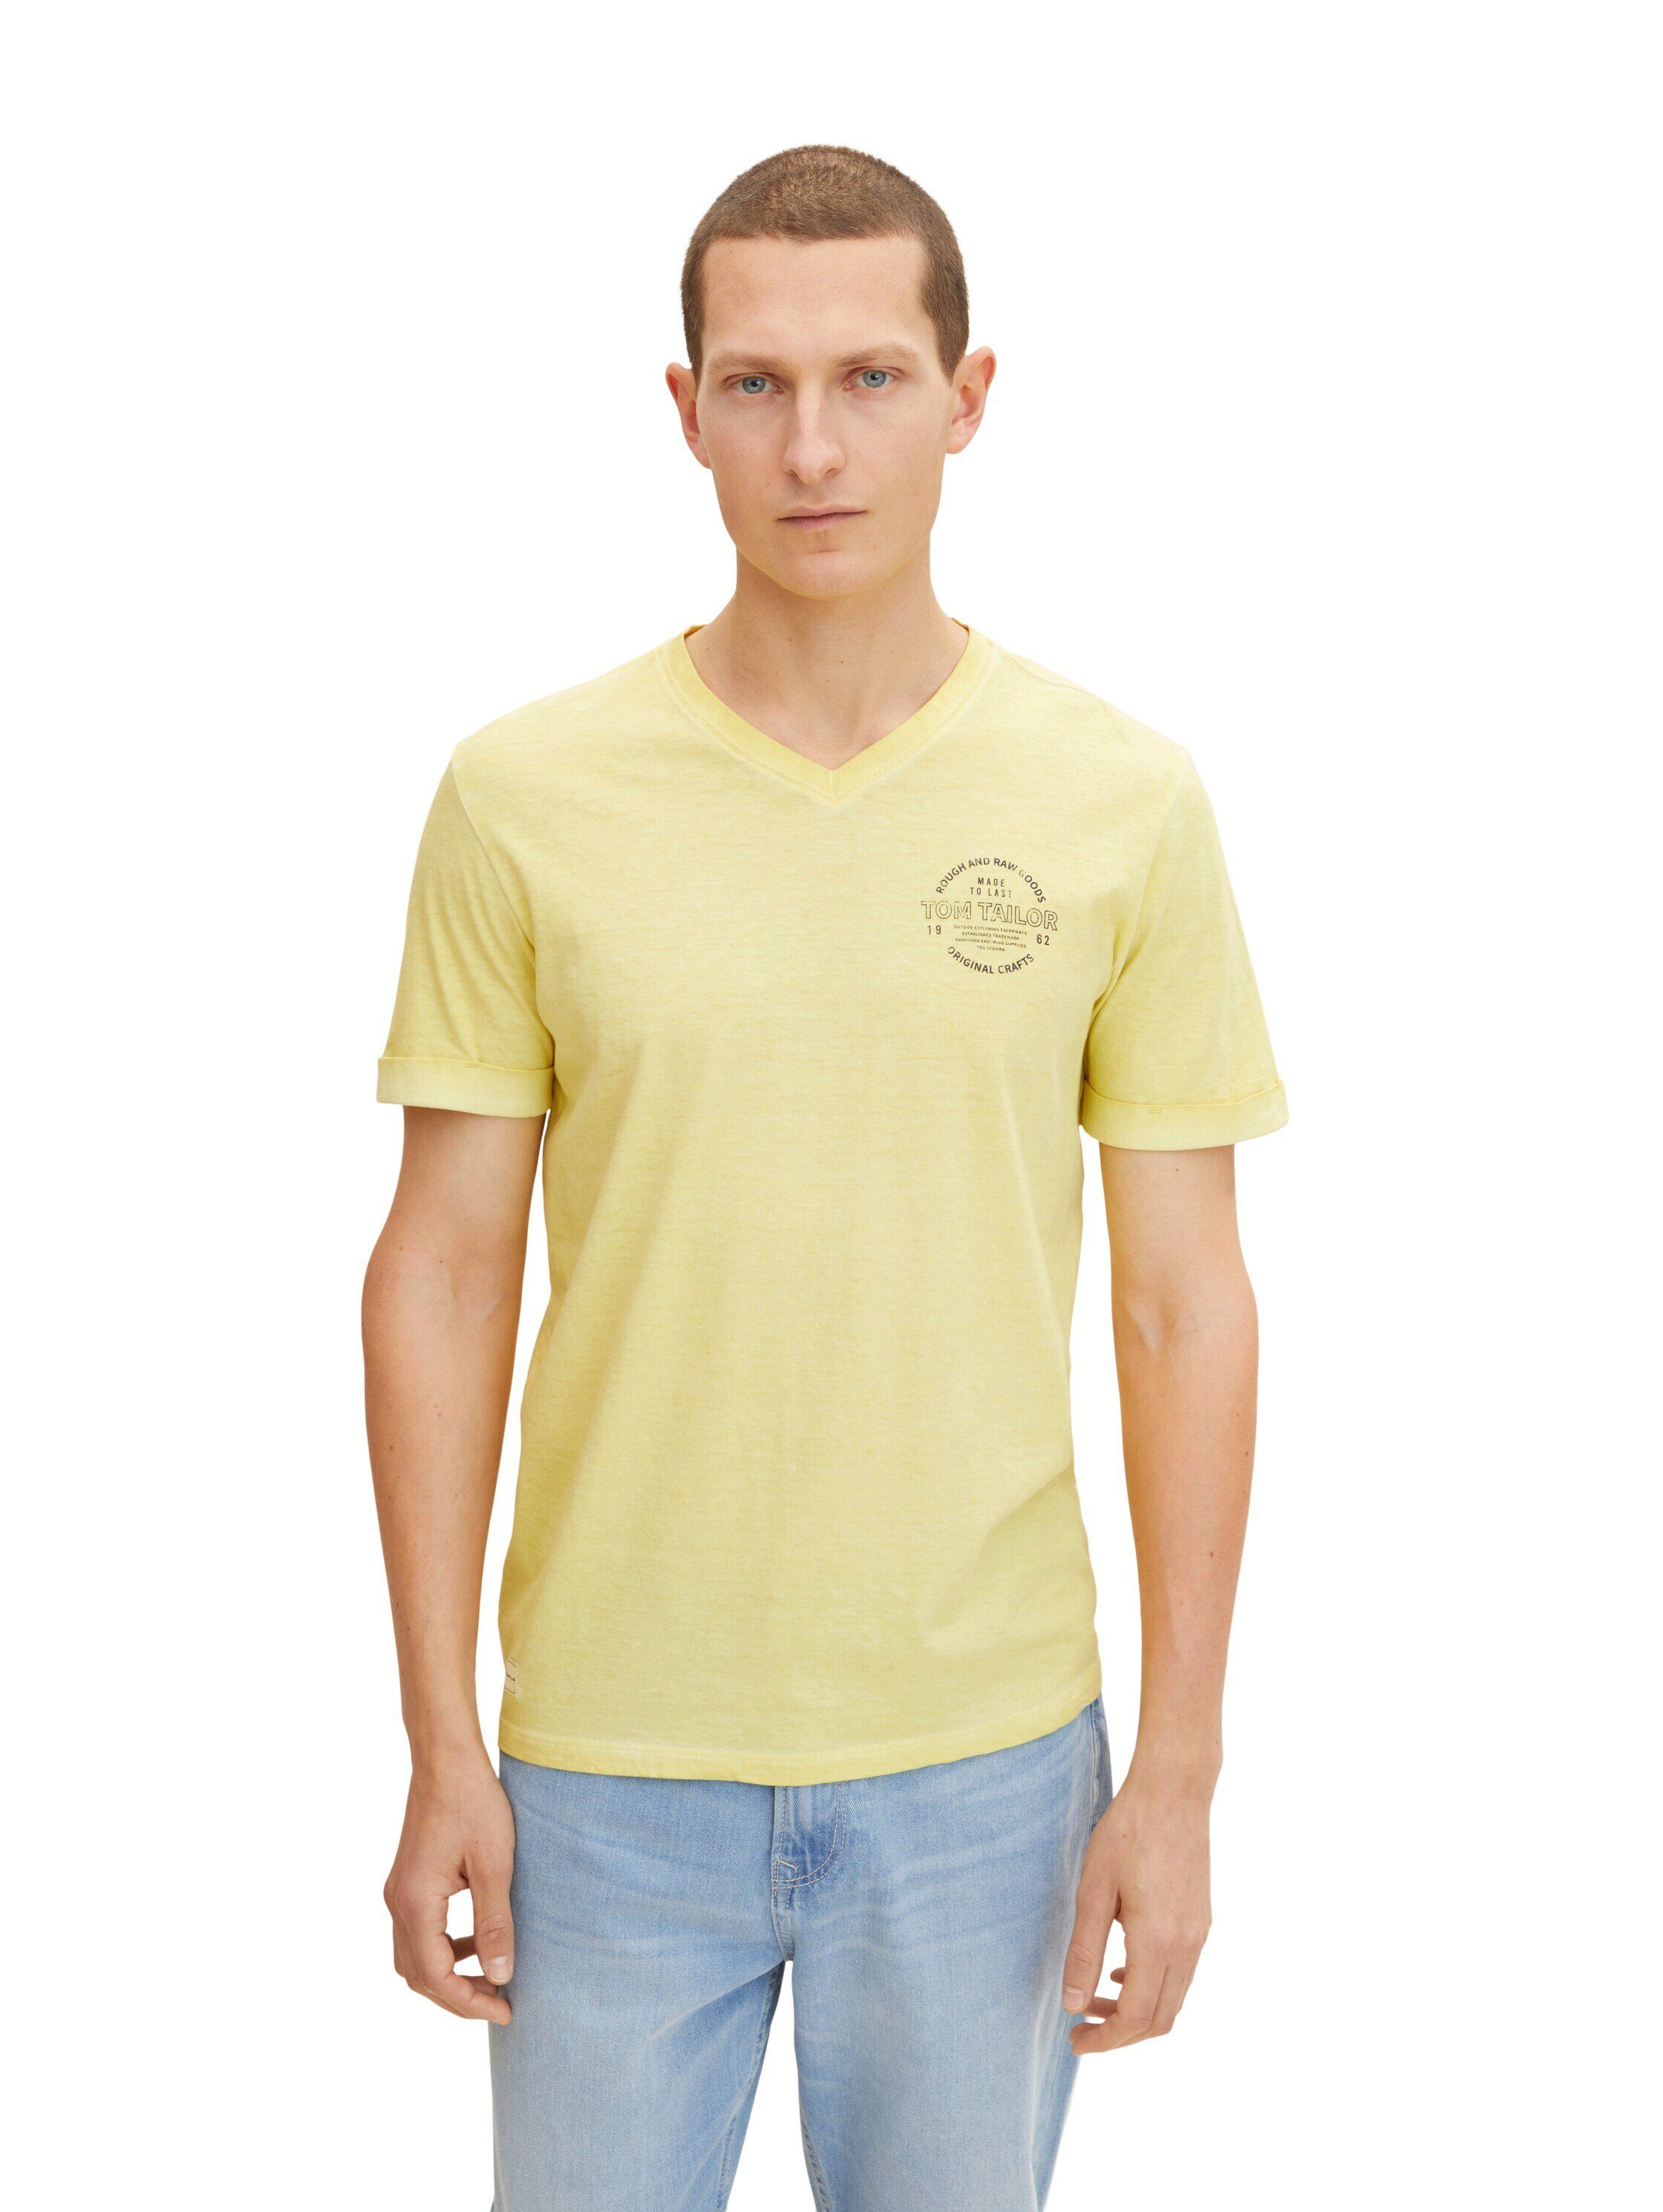 T-Shirt gelb T-Shirt und TAILOR mit TOM Shirt V-Ausschnitt Logo Print